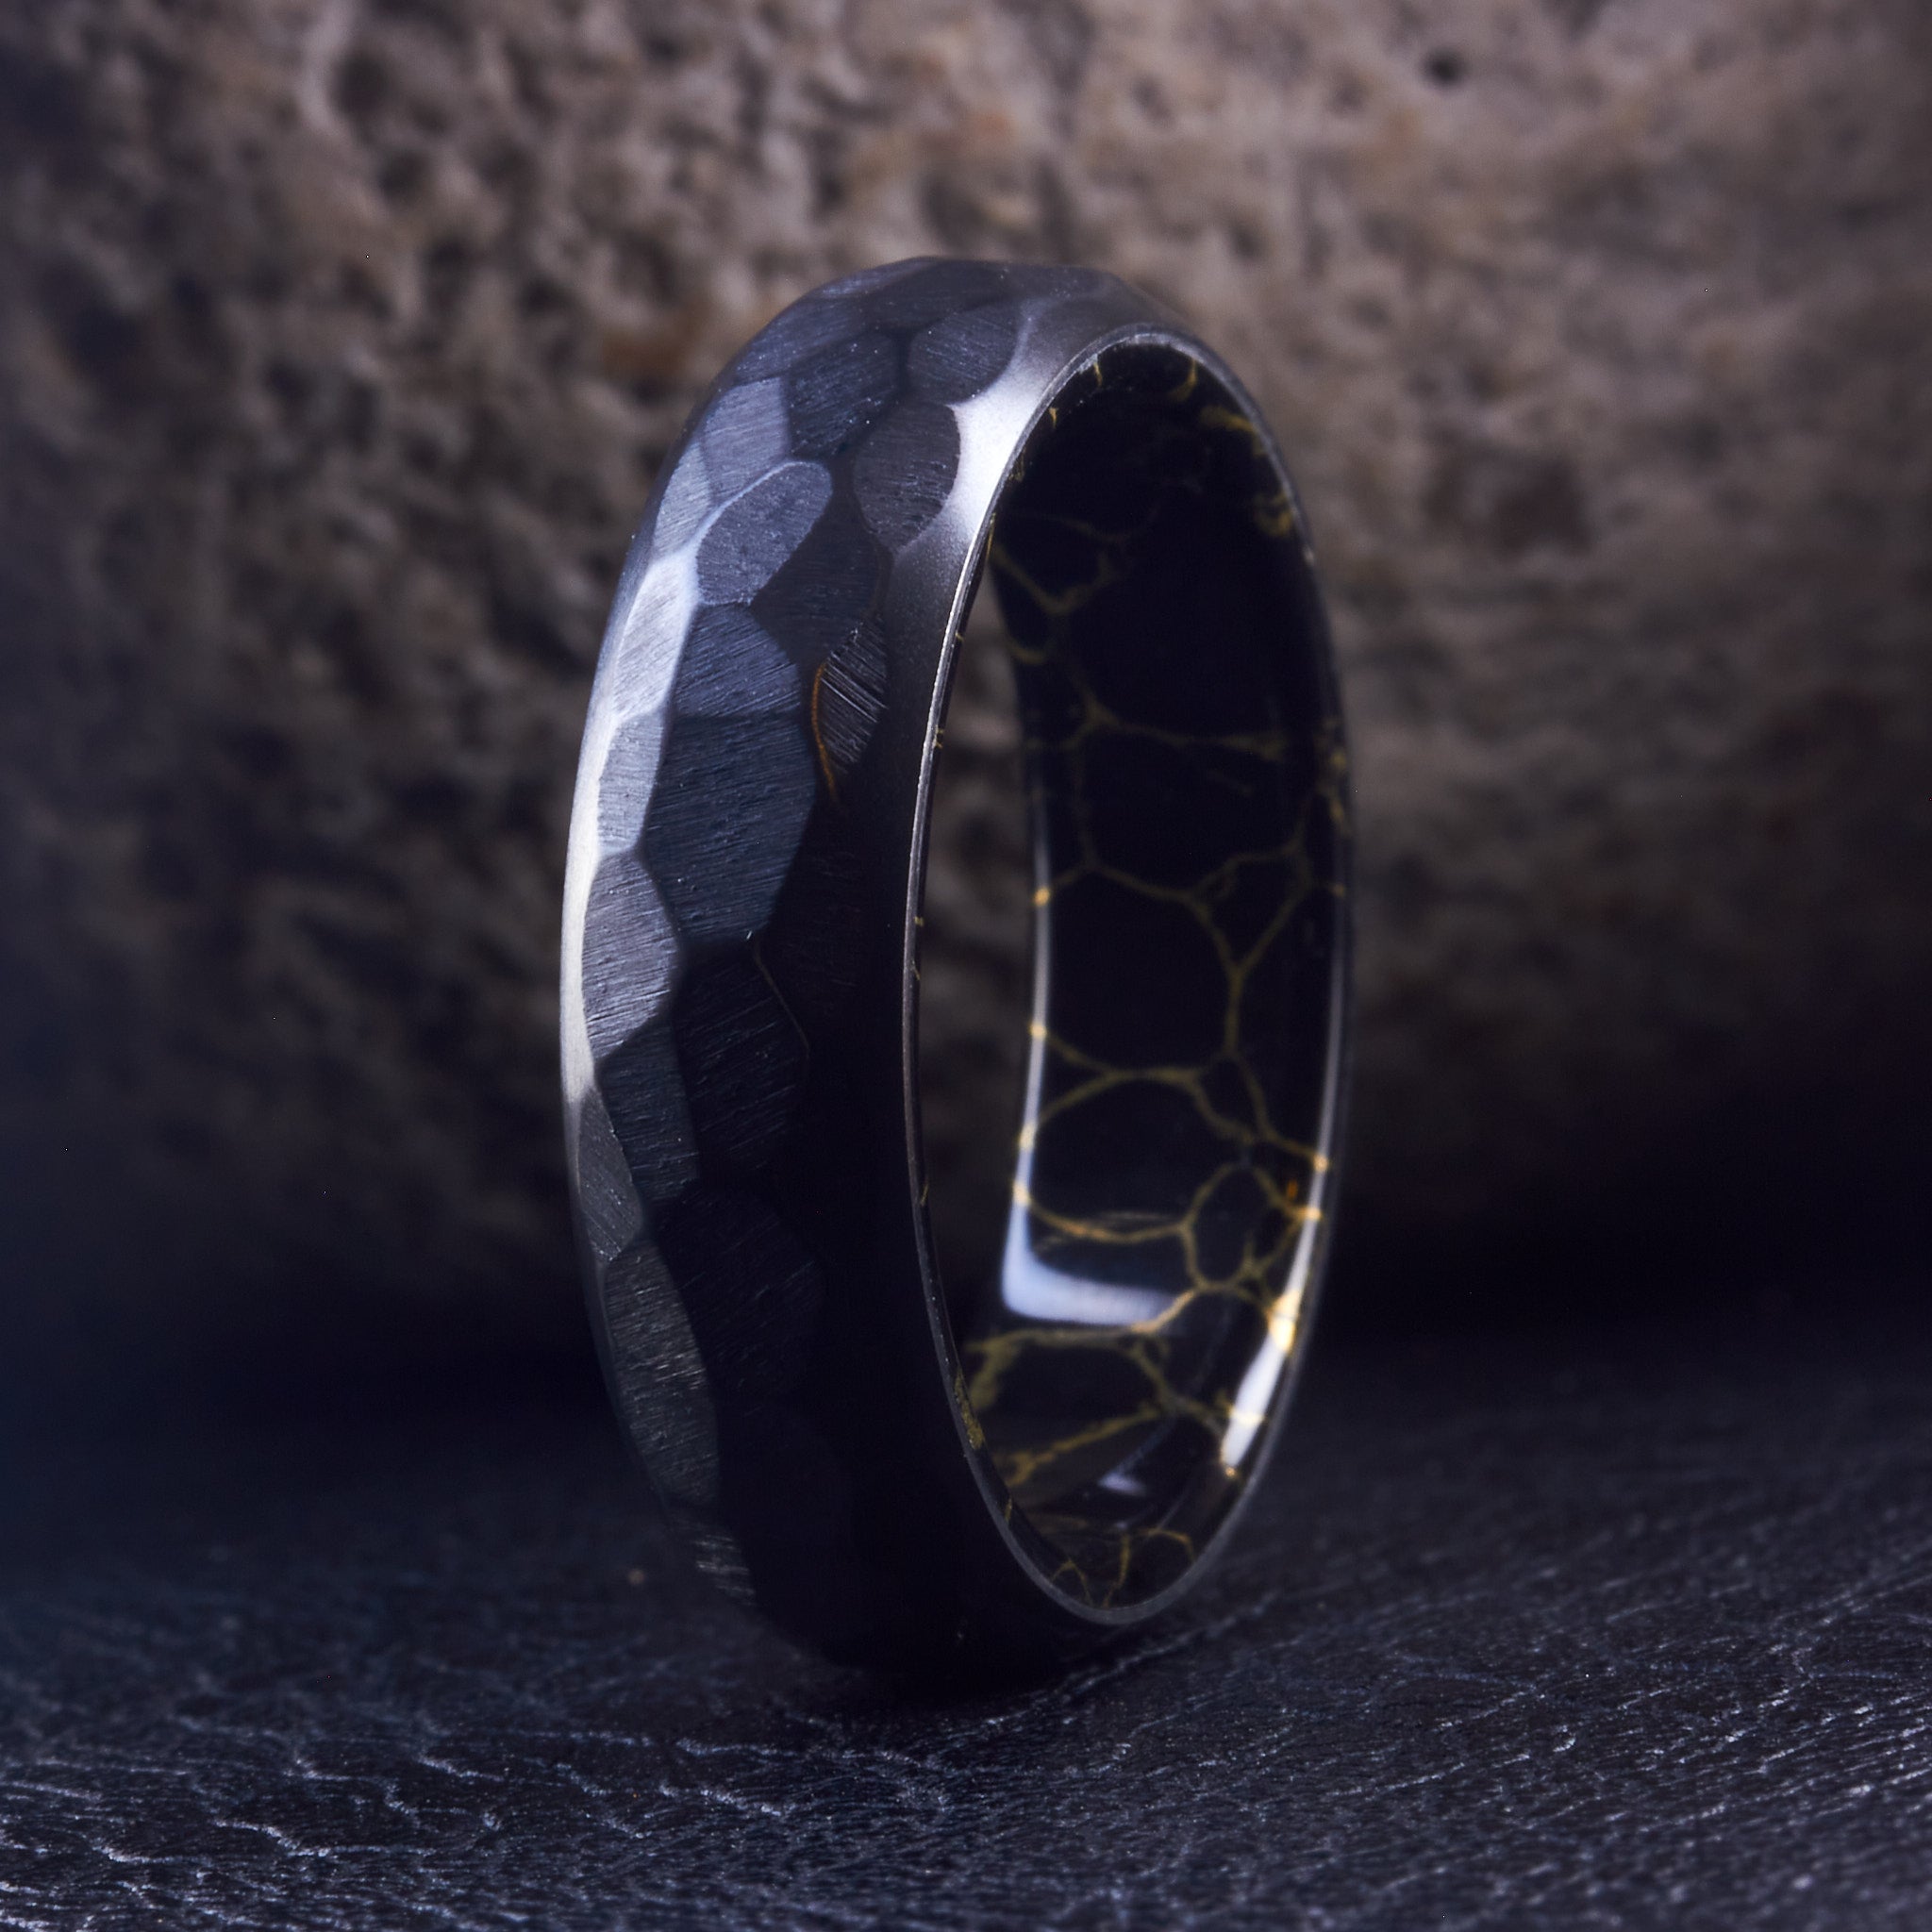 Hammered Black Zirconium & Trustone ring